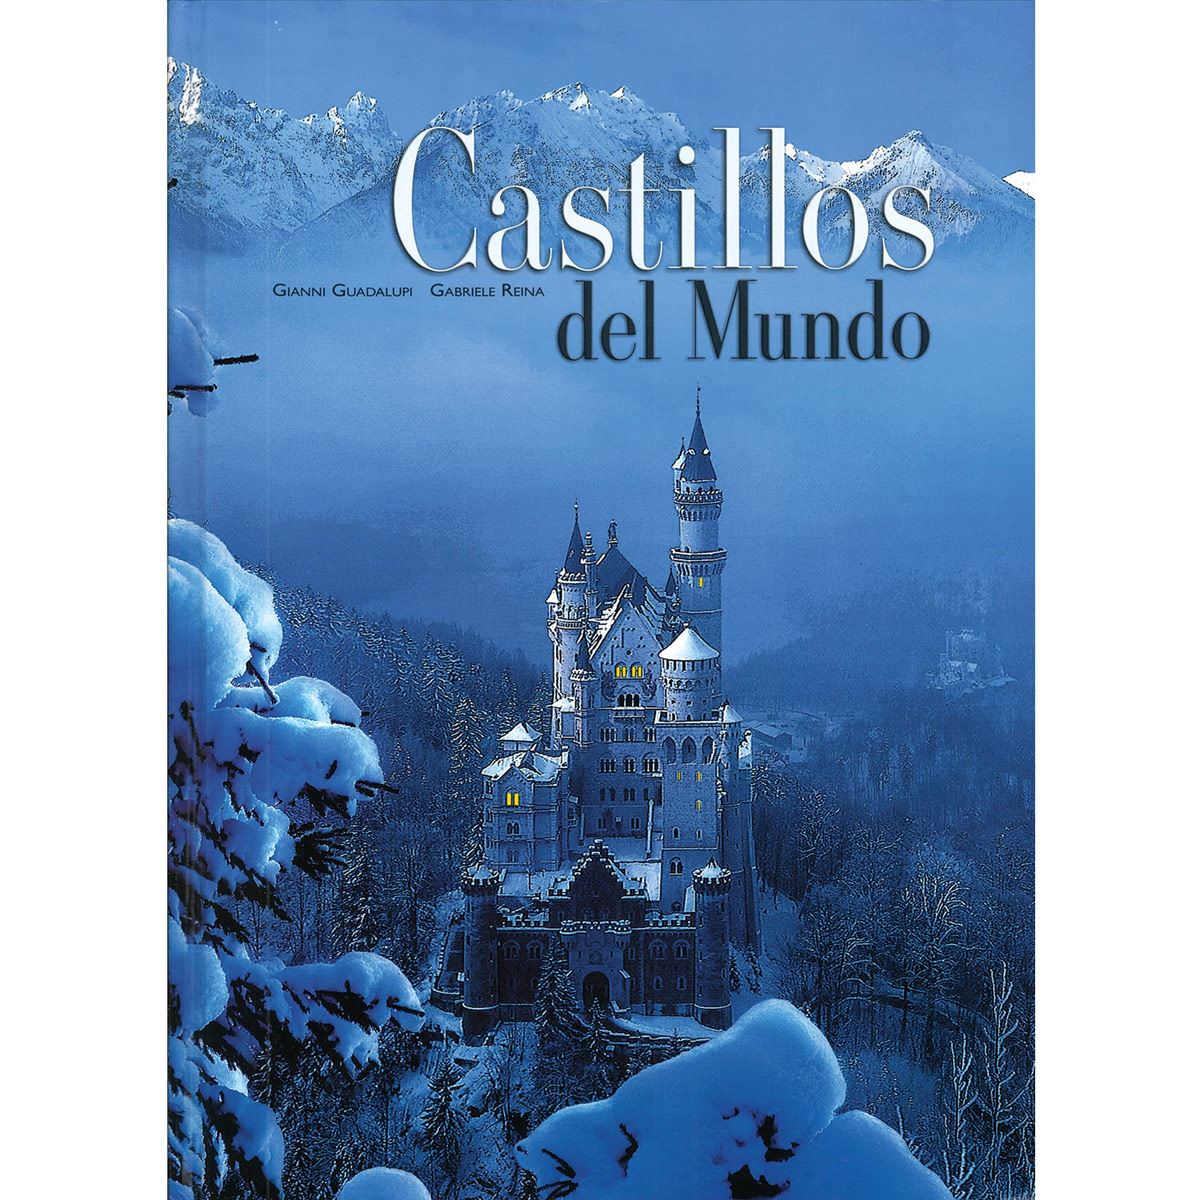 Castillos del mundo